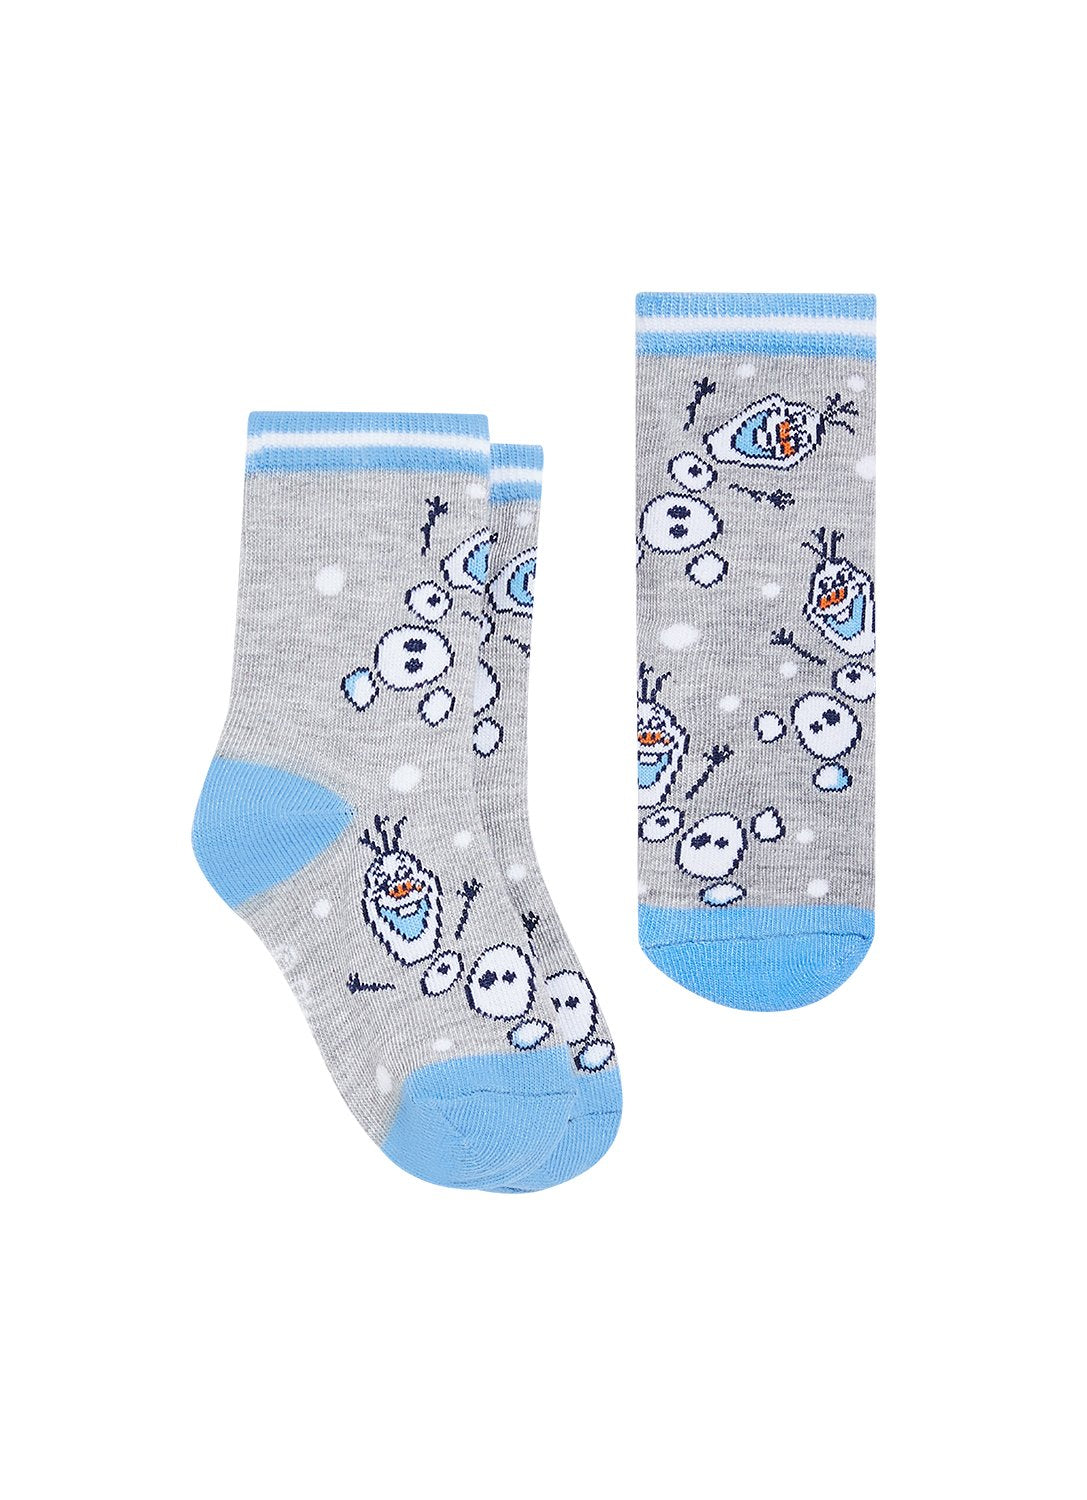 Girls Gray Socks with Frozen 2 motifs